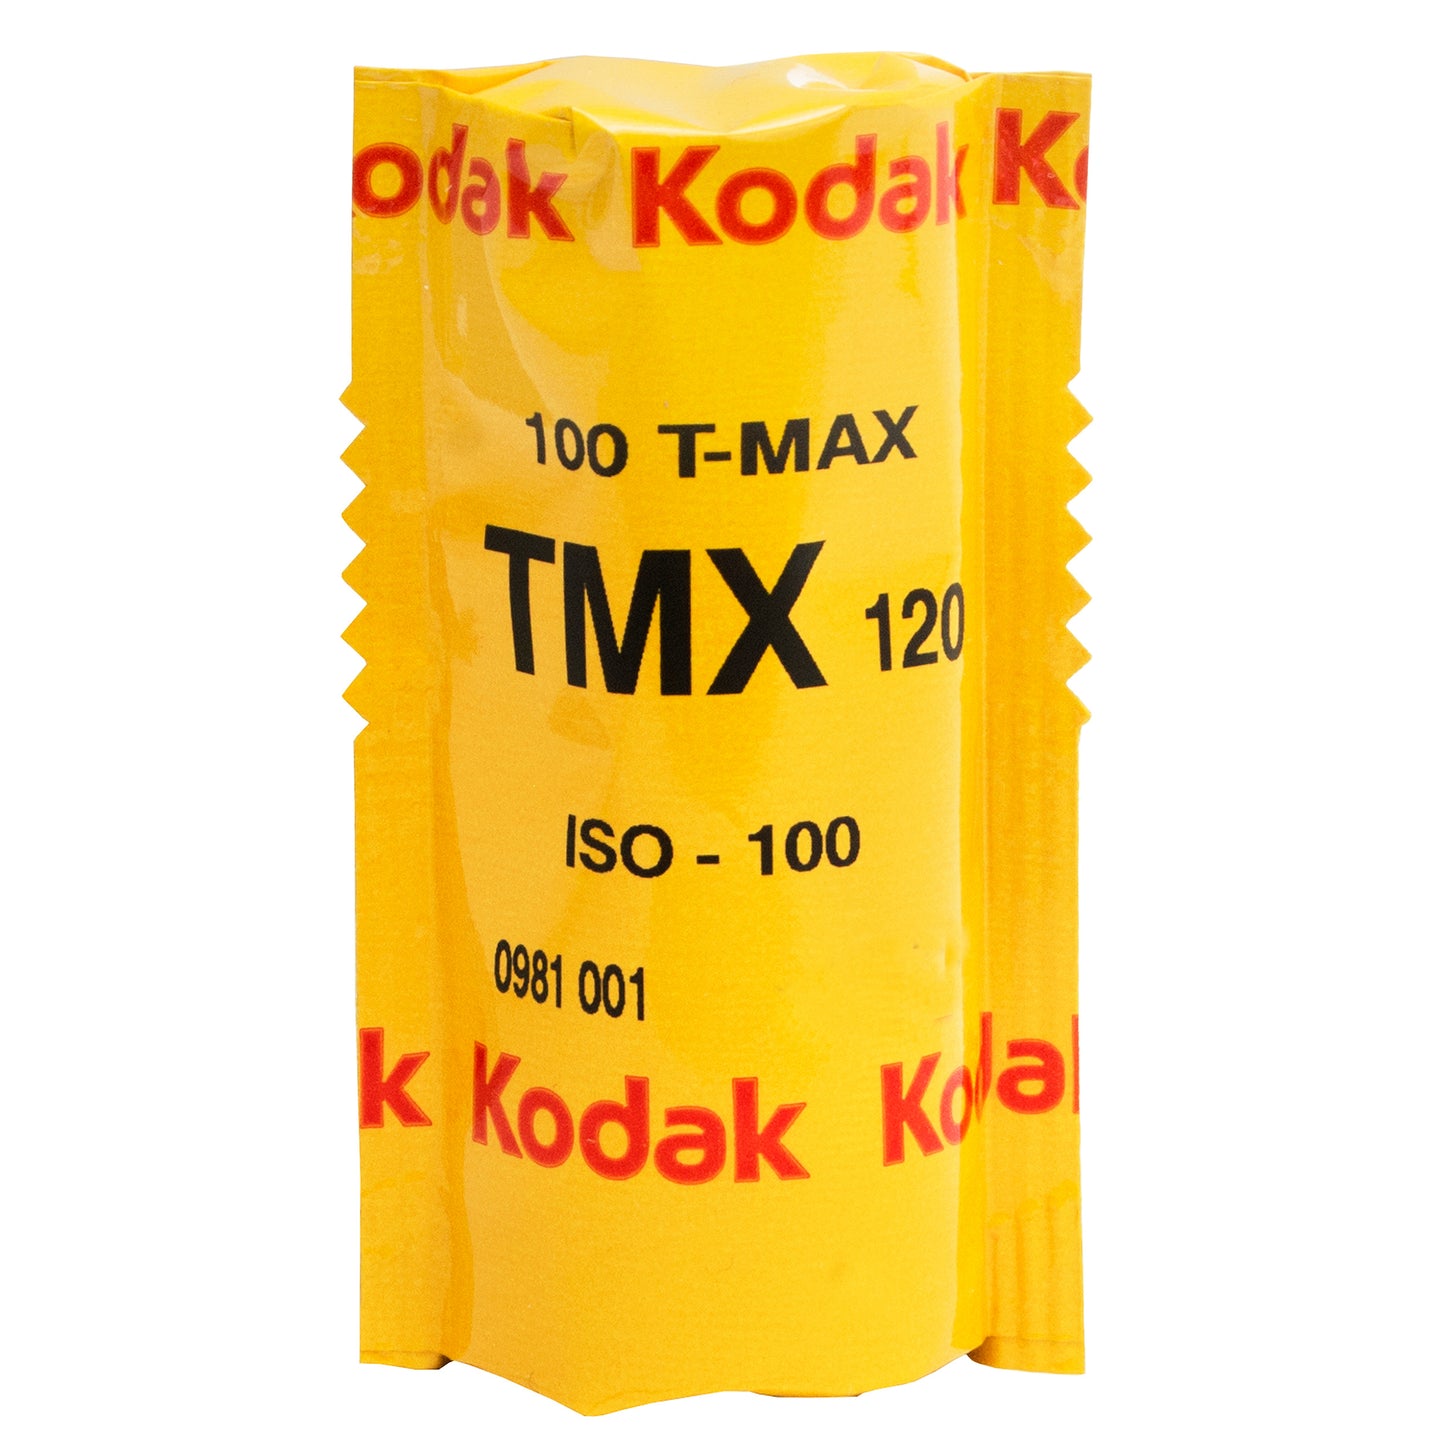 Kodak Professional T-Max 100 | 120